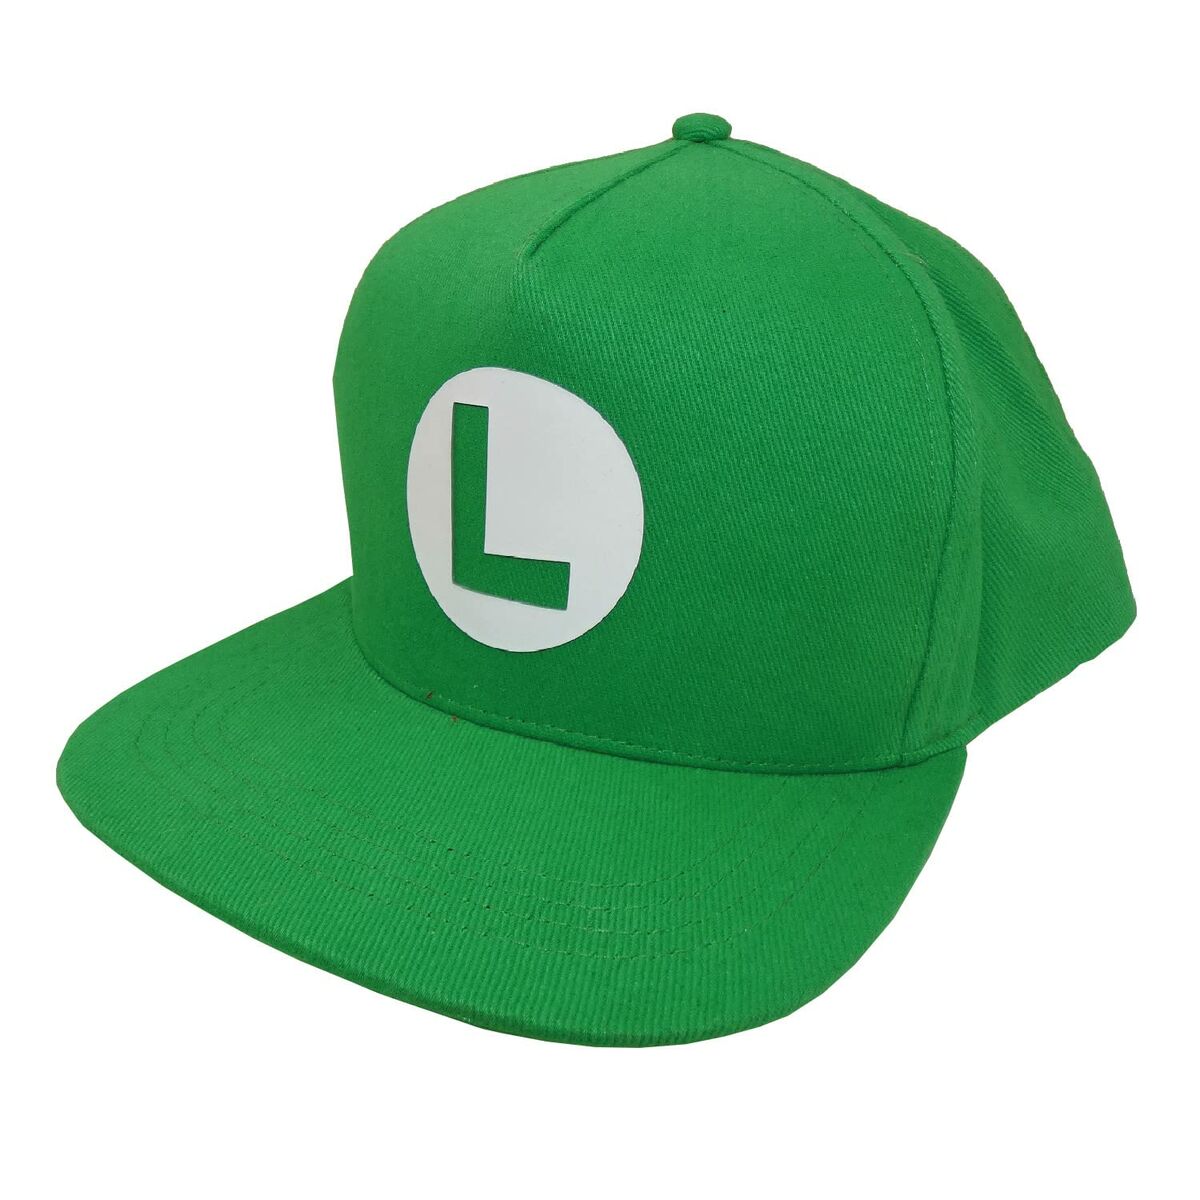 Gorra Unisex Super Mario Luigi Badge 58 Cm Verde Talla Única - verde - 